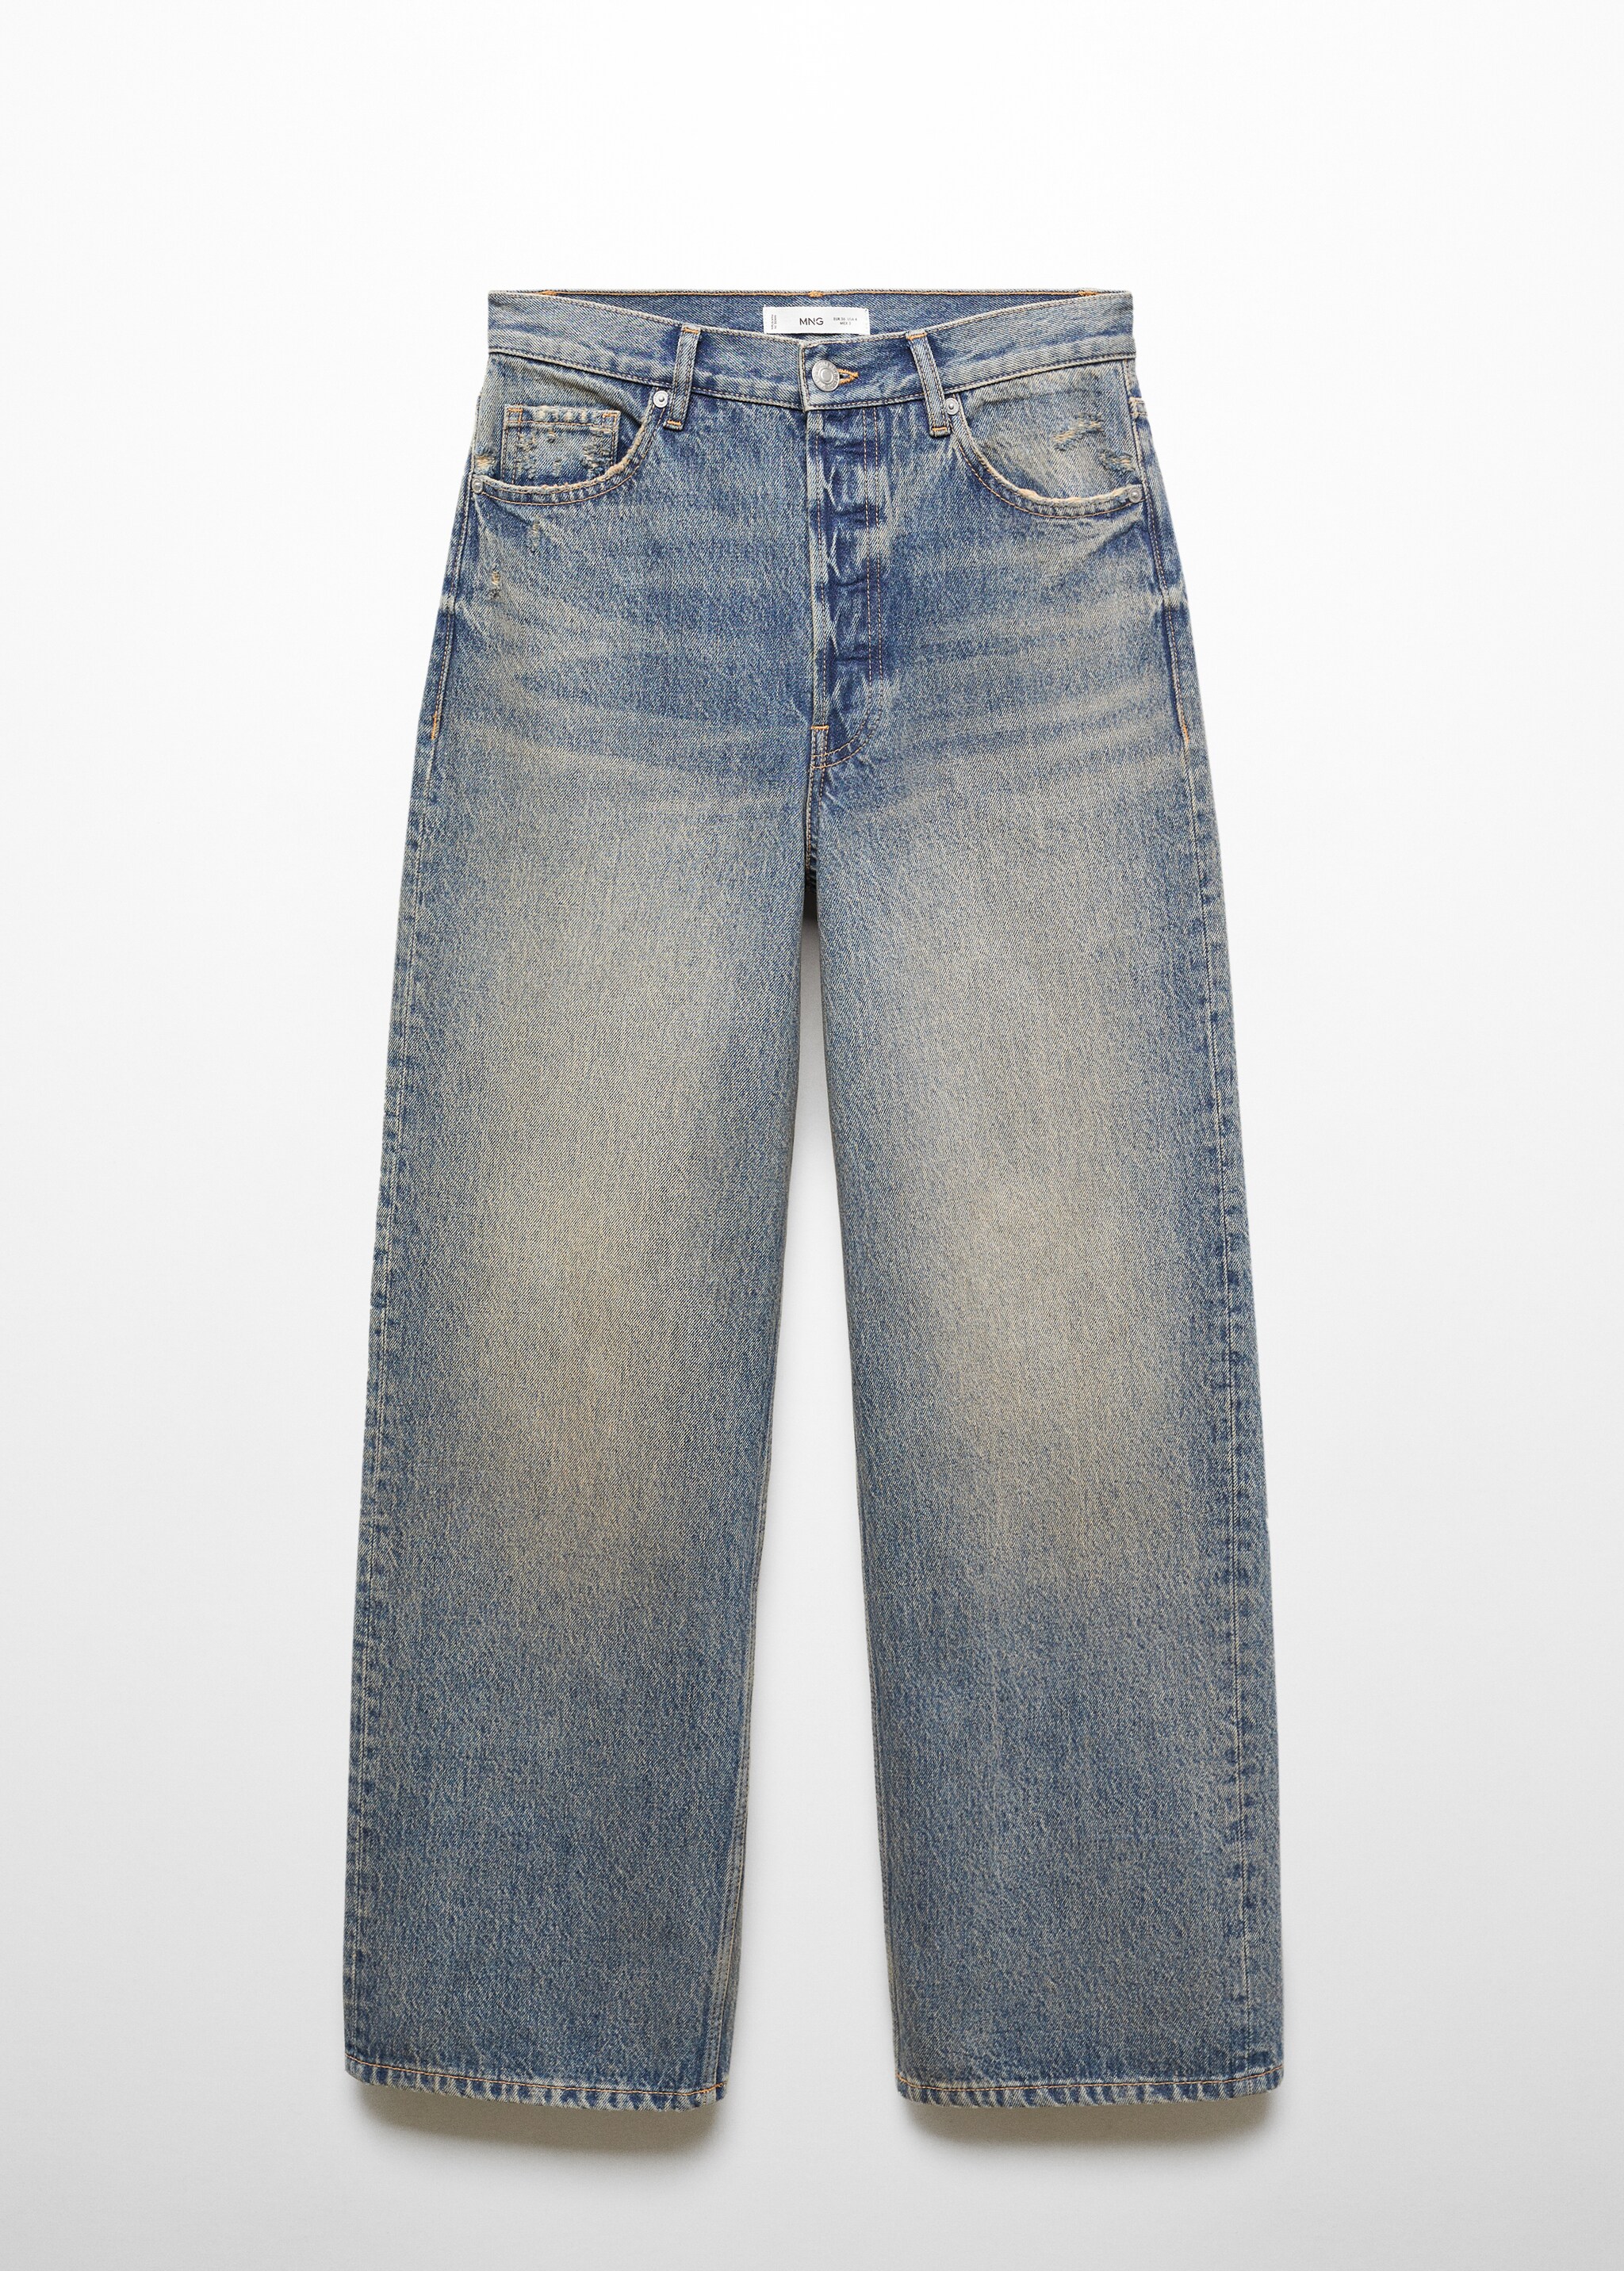 Orta bel wideleg jean pantolon - Modelsiz ürün